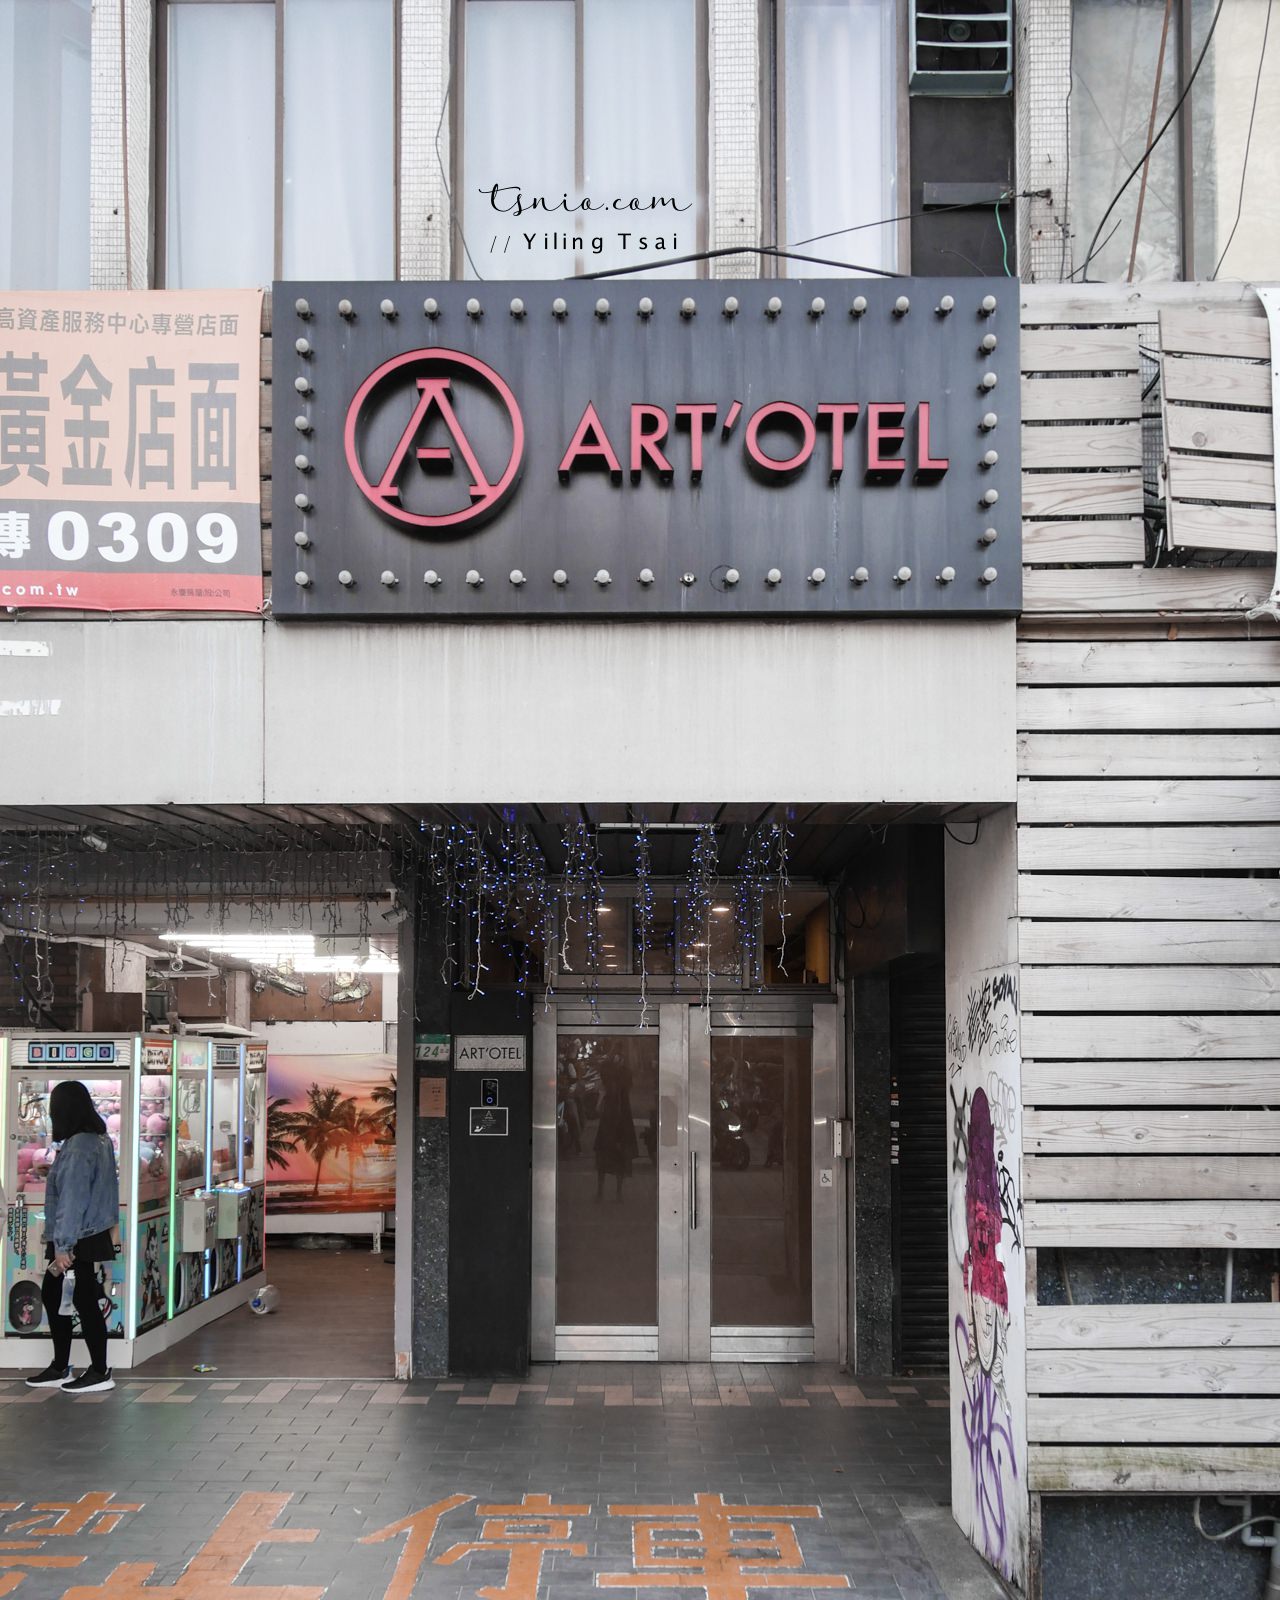 台北西門町住宿推薦 Art'otel 艾特文旅 電影街平價飯店